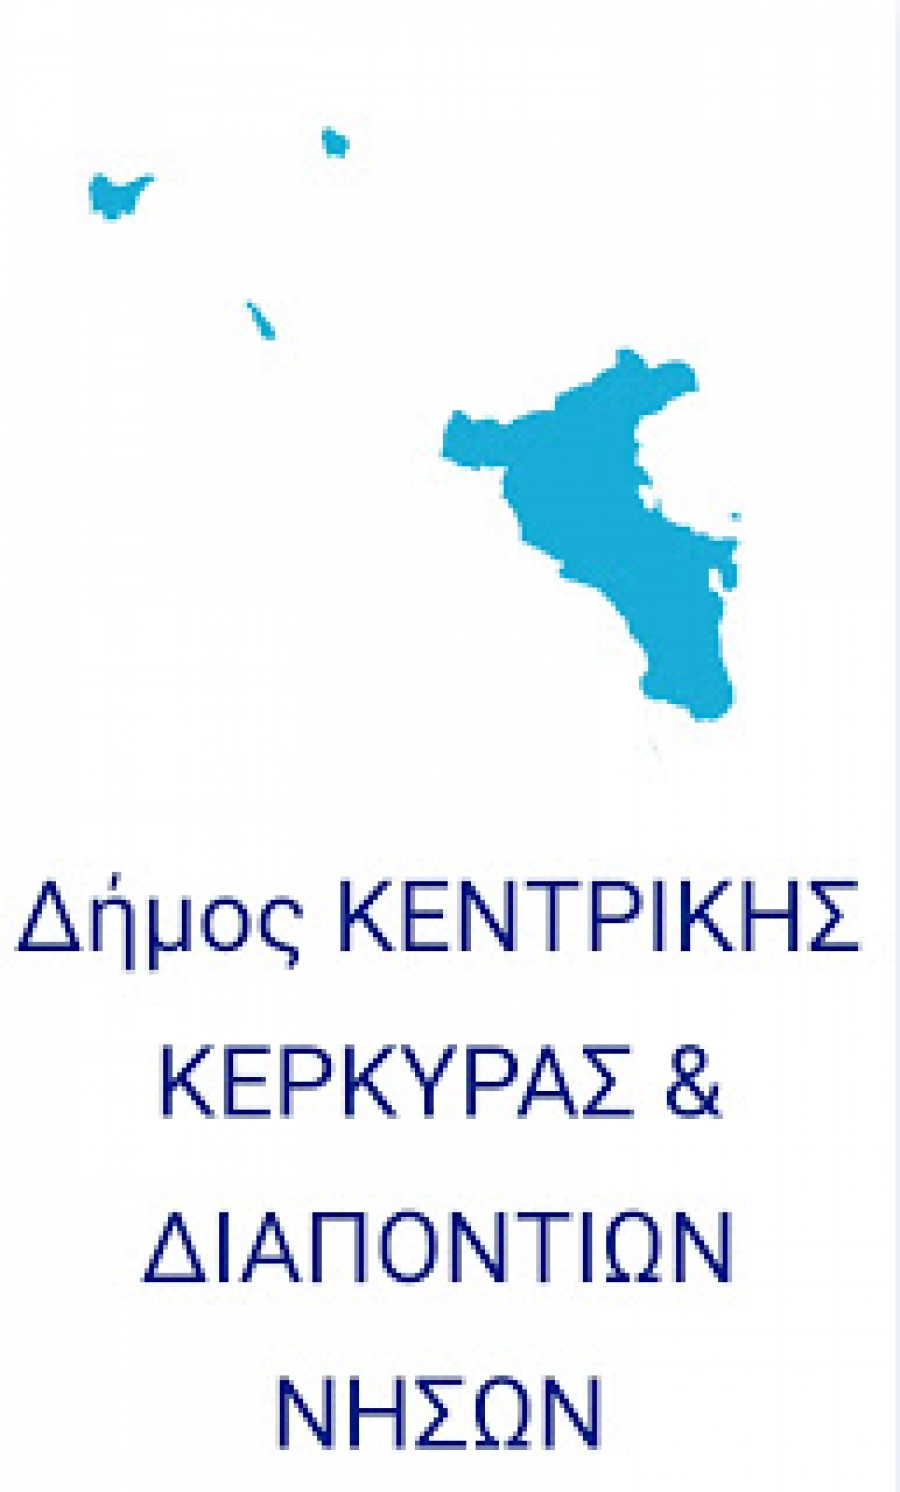 Κατεπείγουσα και Τακτική Συνεδρίαση την Κυριακή 4/10 του Δήμου Κεντρικής Κέρκυρας &amp; Διαποντίων Νήσων